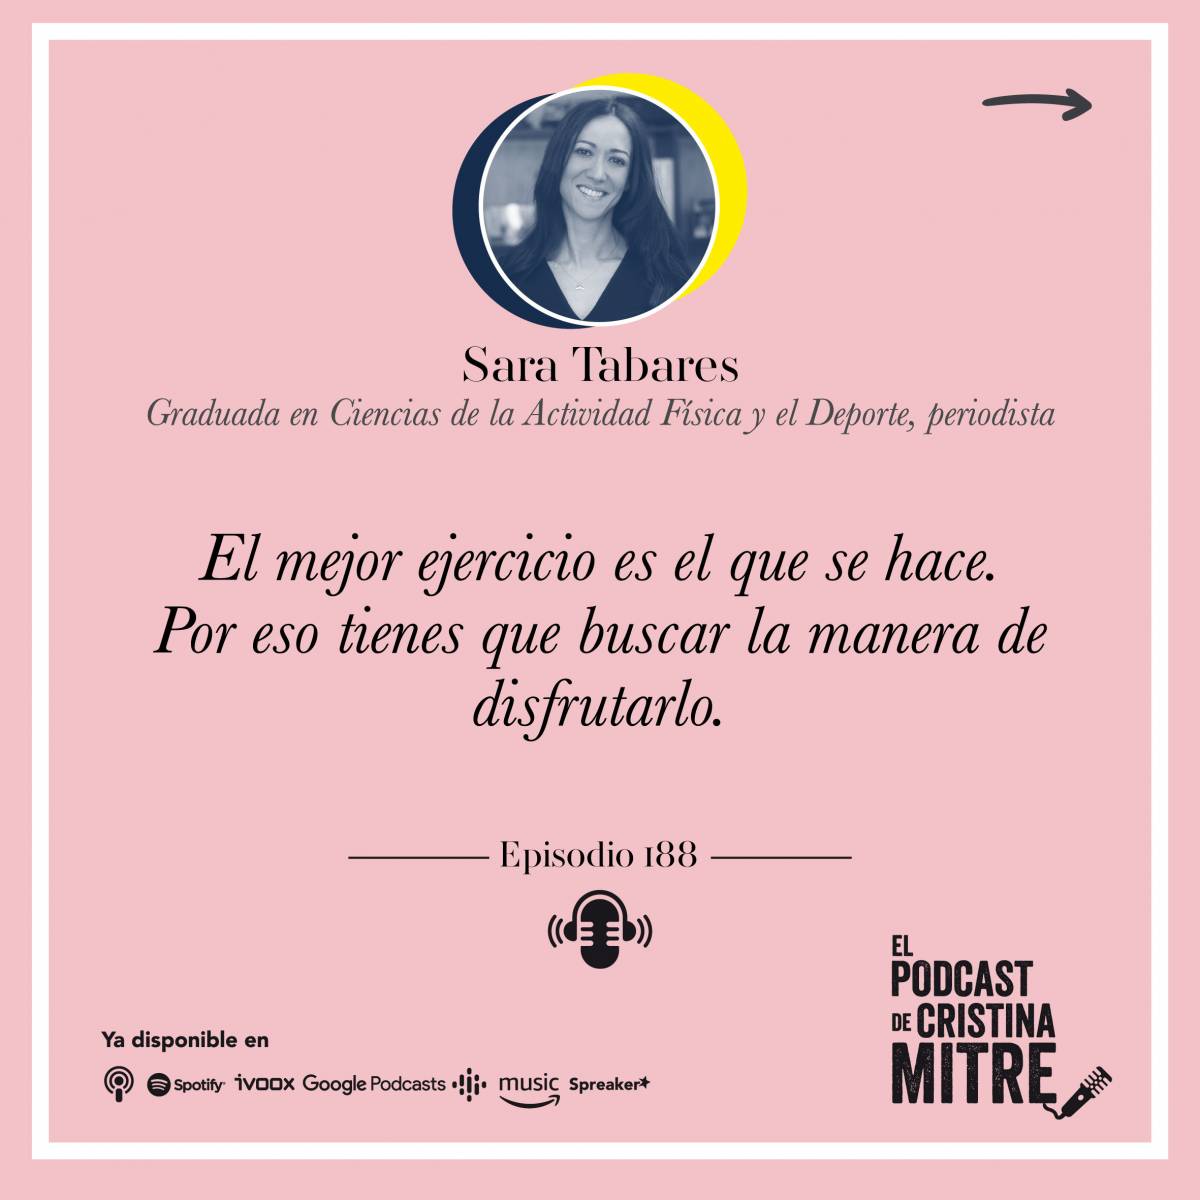 El podcast de Cristina Mitre Sara Tabares Entrenamiento